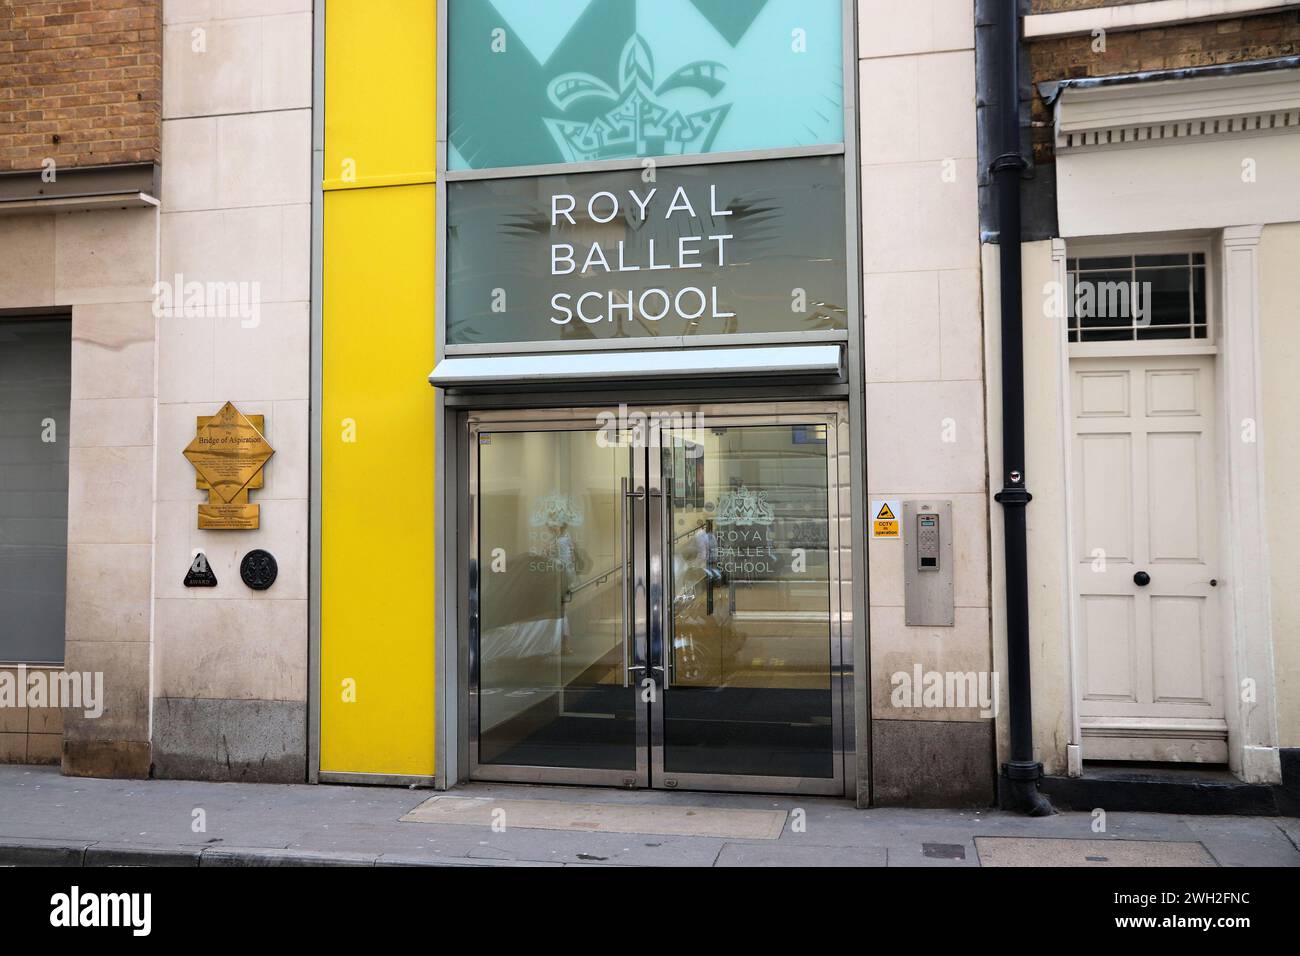 LONDRA, Regno Unito - 14 LUGLIO 2019: Royal Ballet School di Londra. È uno dei centri più importanti al mondo per l'addestramento al balletto classico. Foto Stock